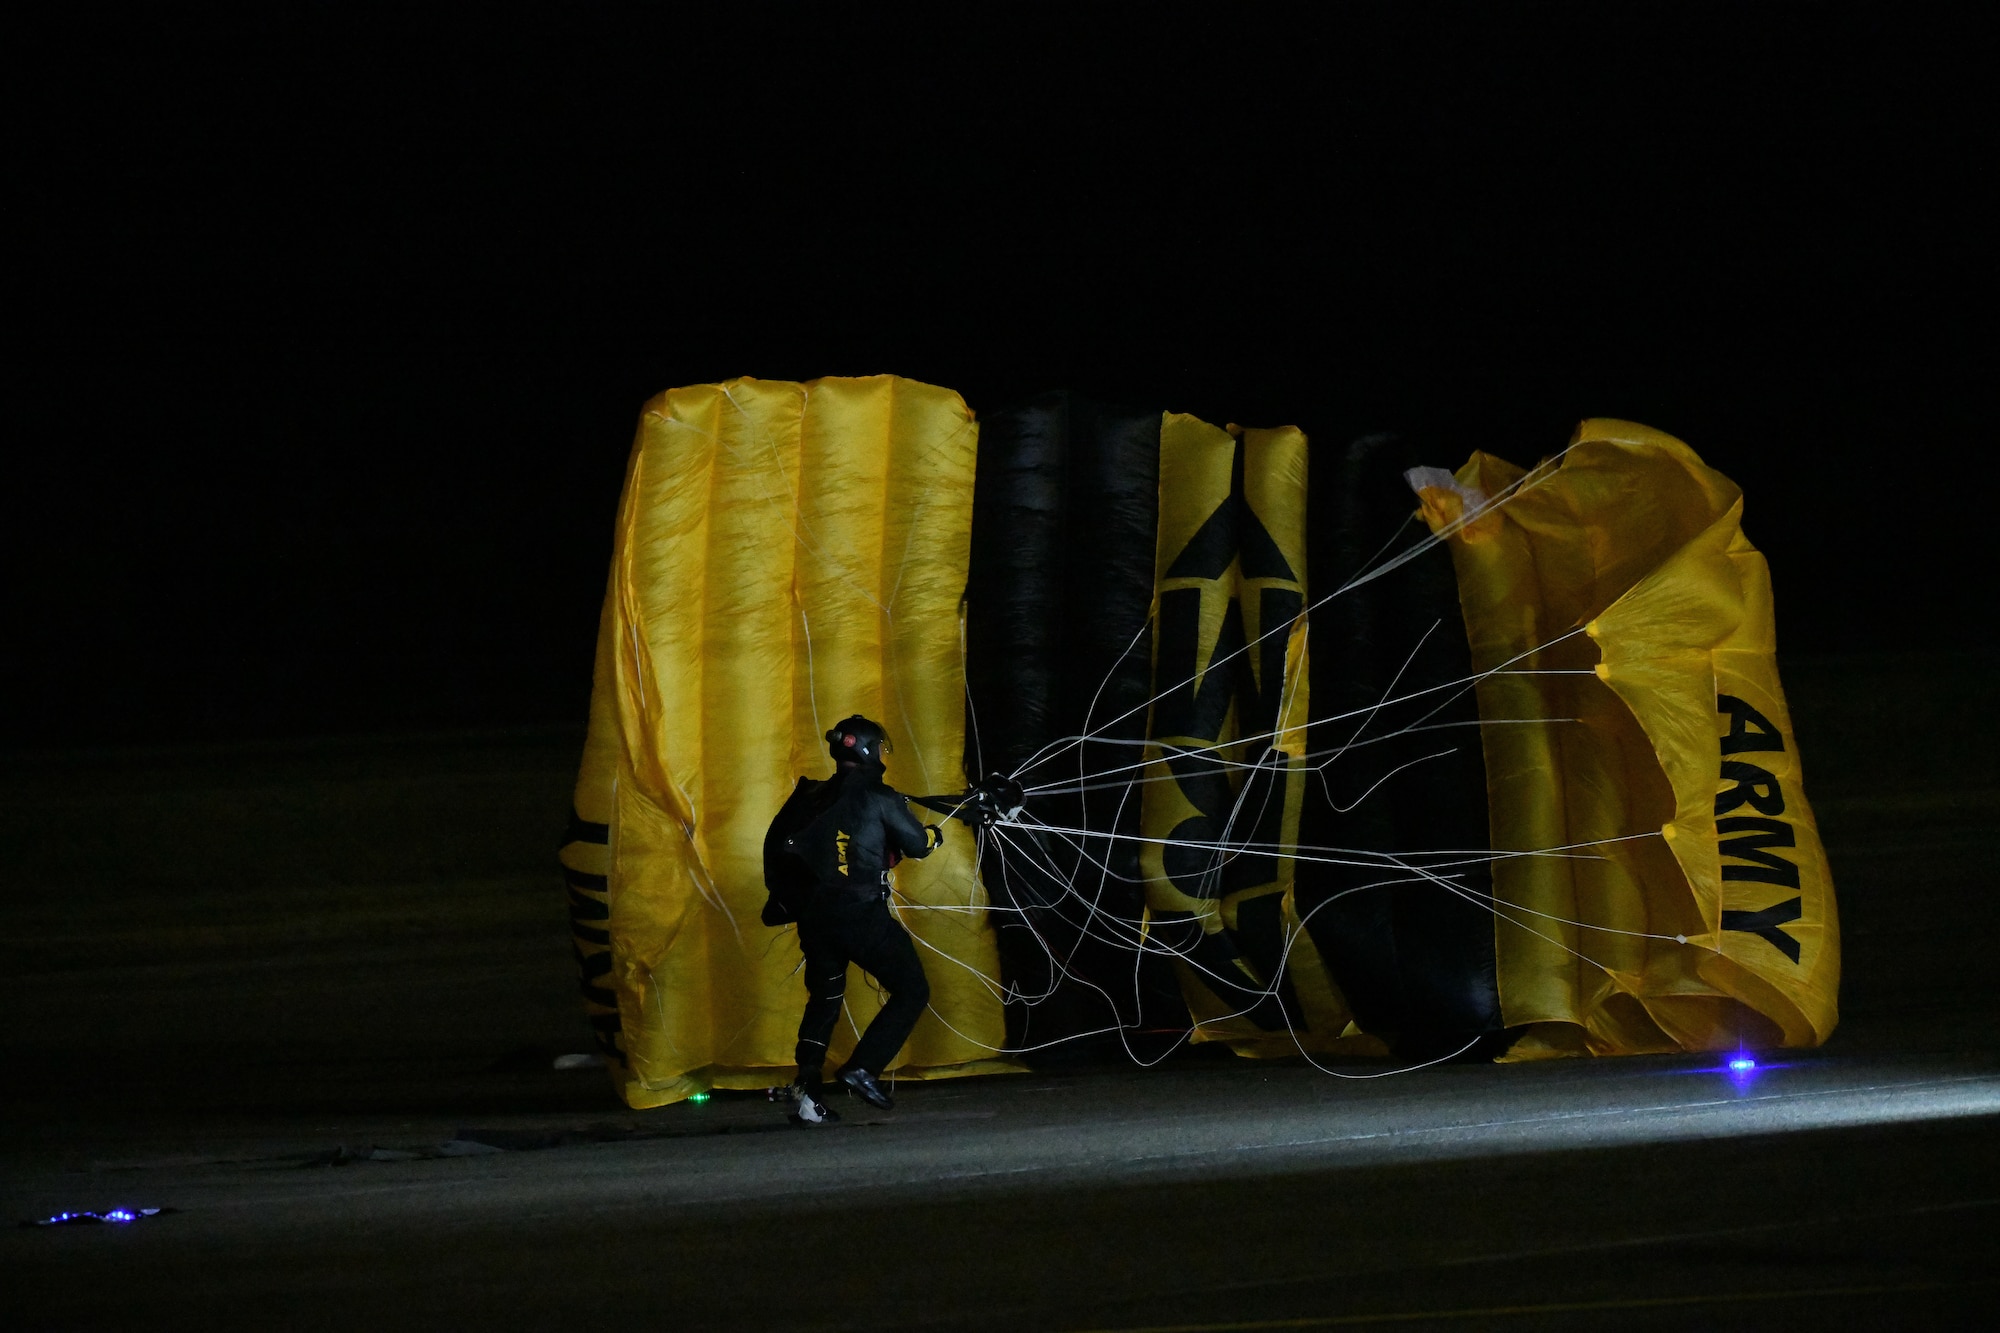 Parachuter land on airfield